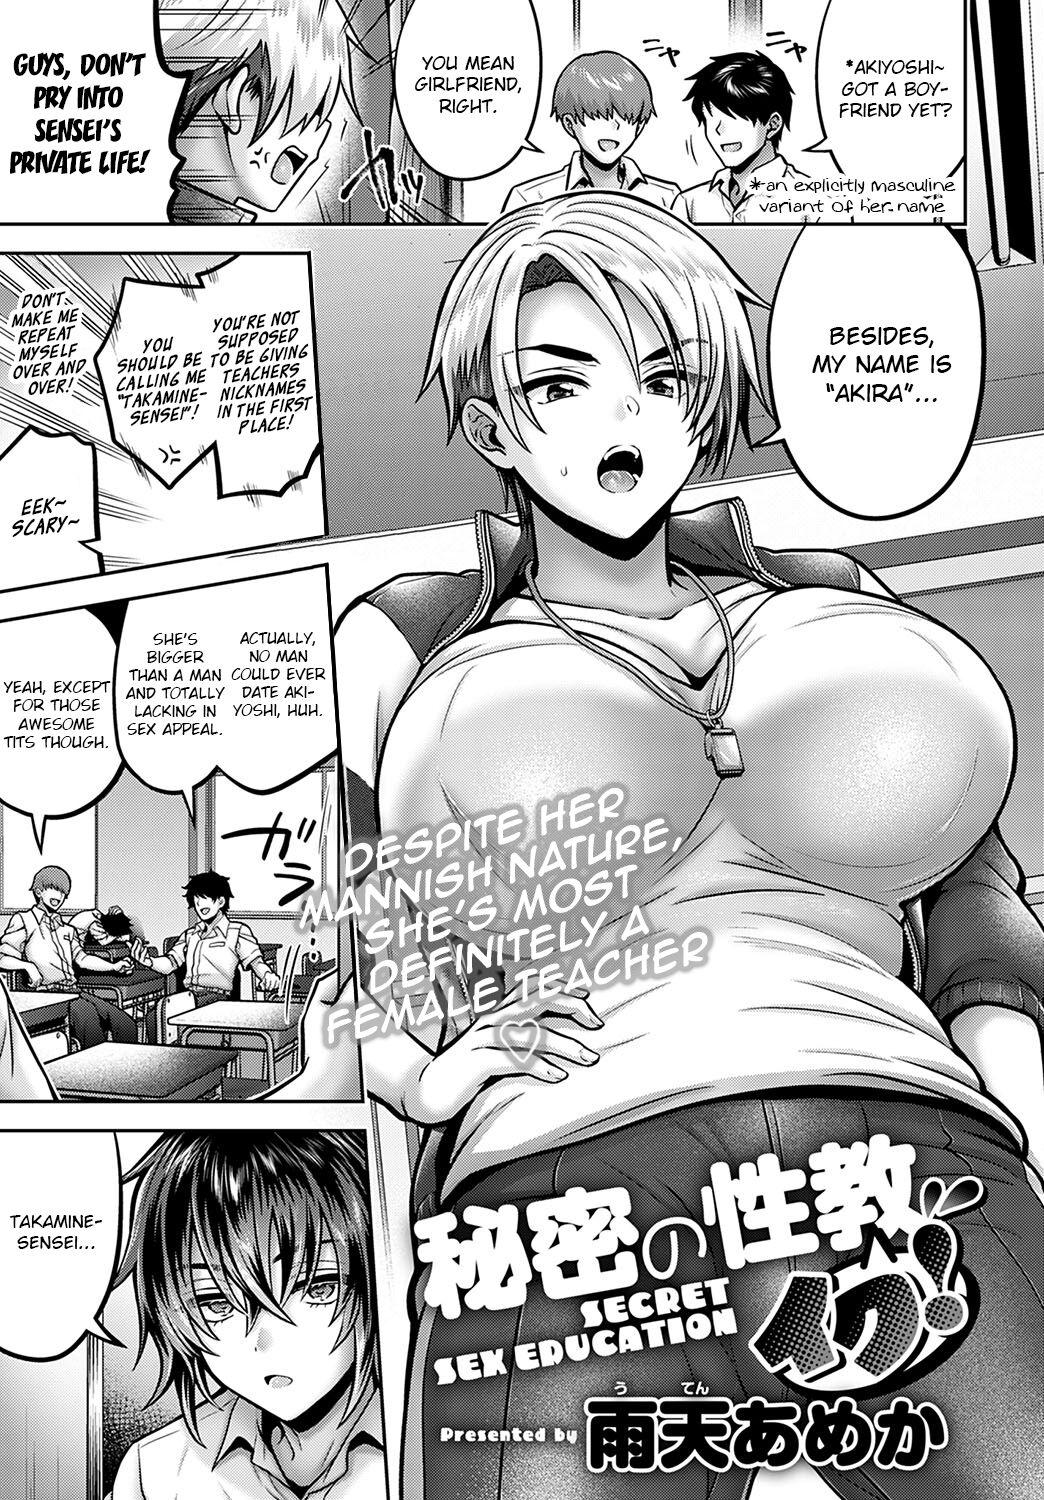 Huge Himitsu no sei kyō Iku! | Secret Sex Education! Pussysex - Page 1